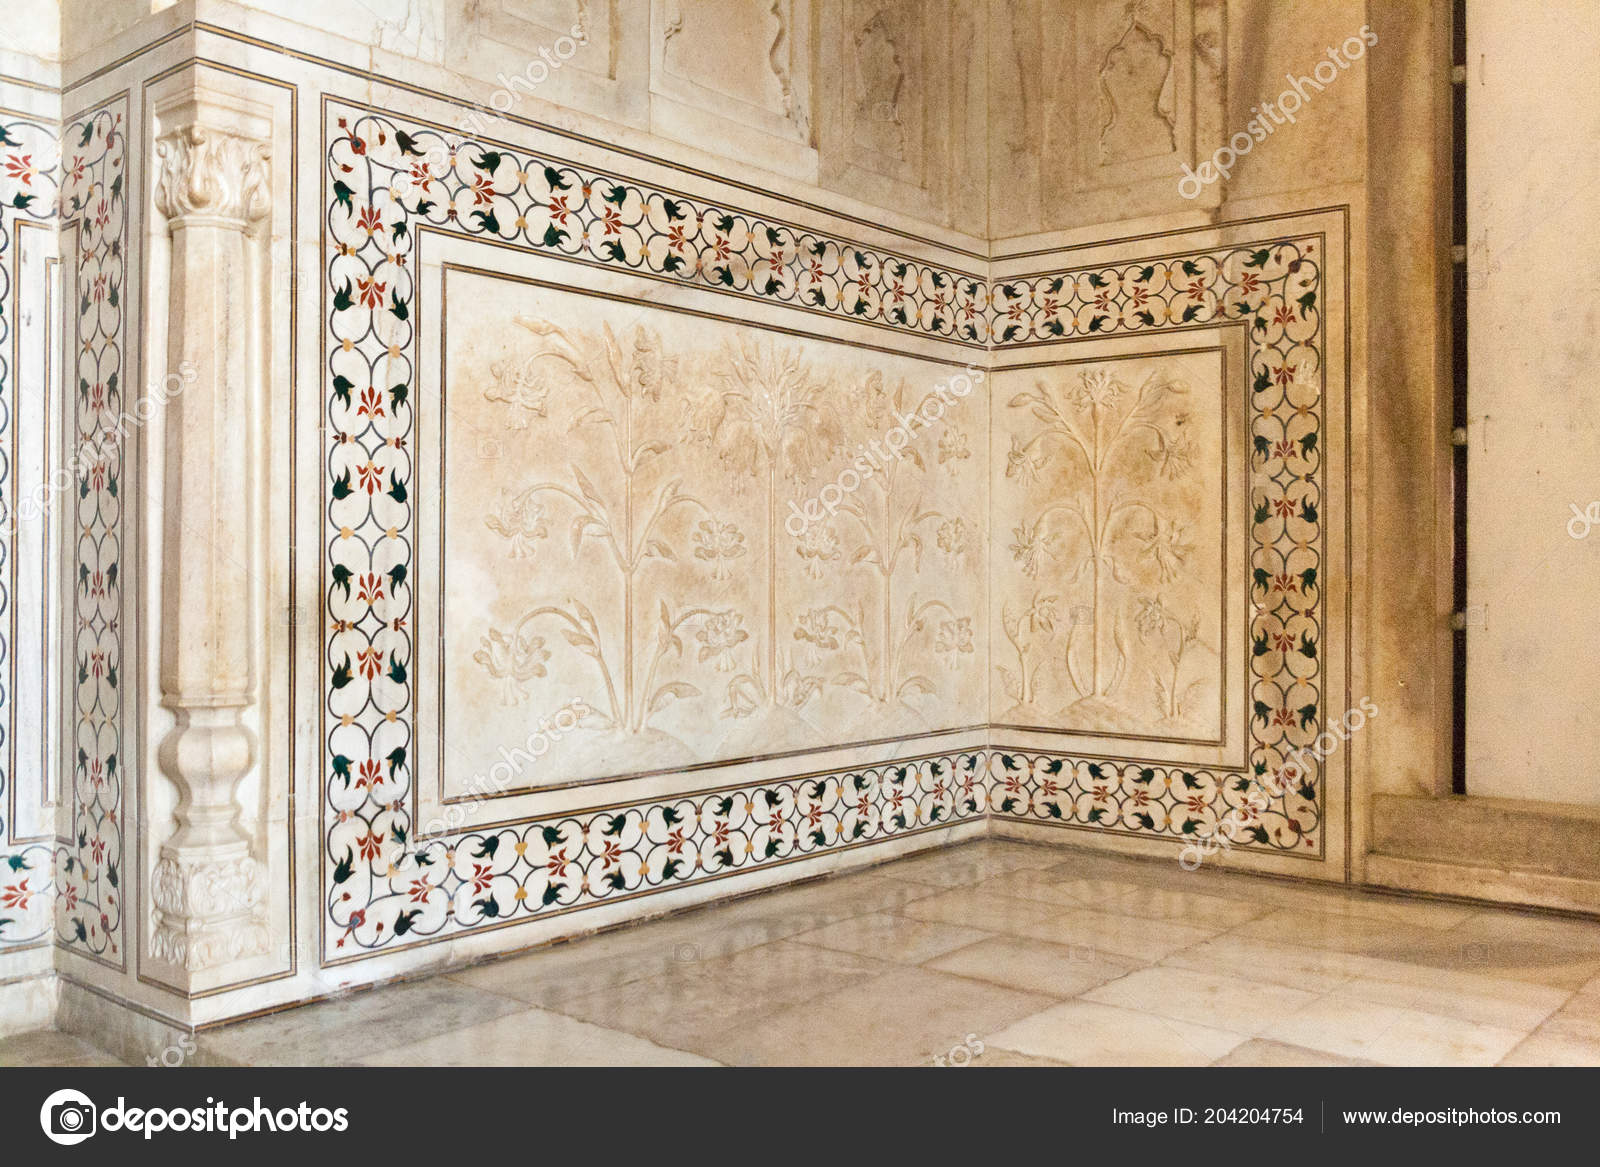 Pietra Dura Decoration Wall Taj Mahal India Stock Photo